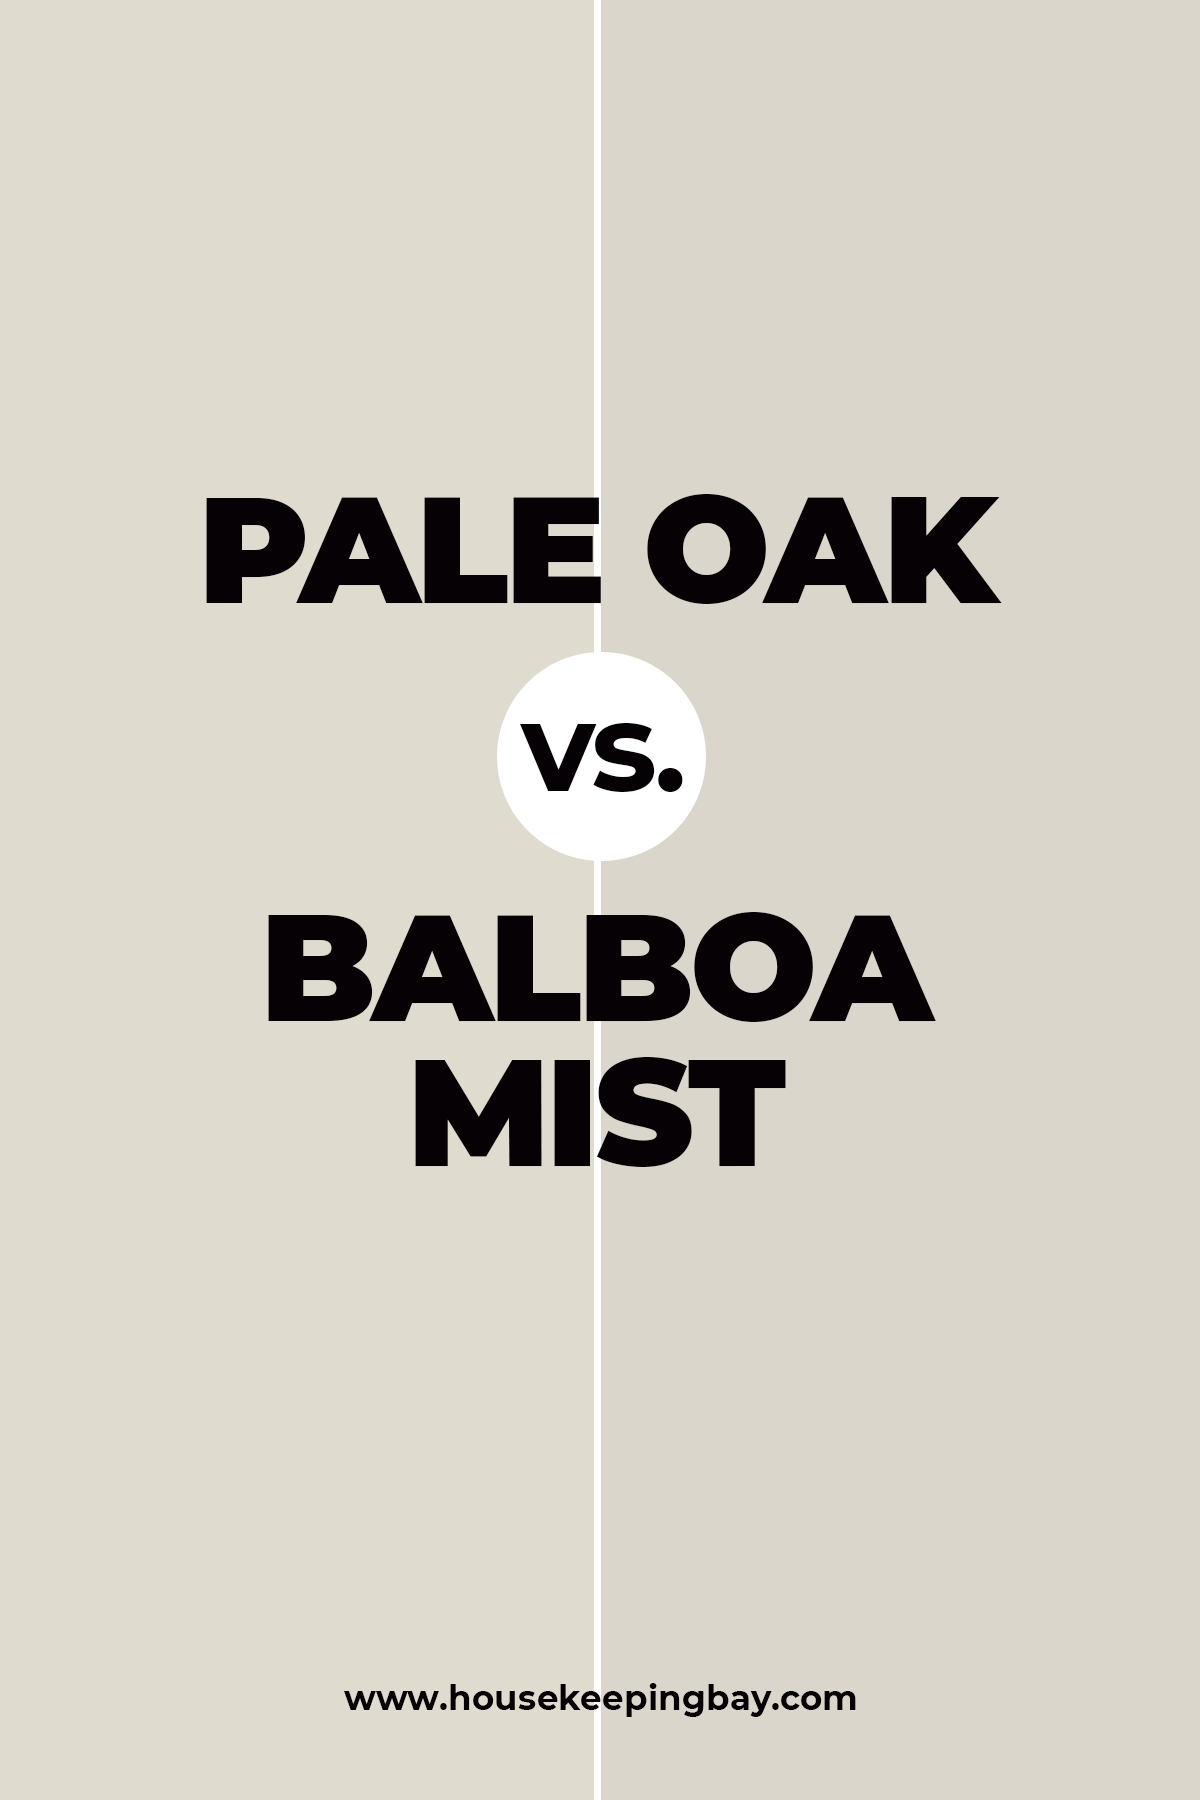 Pale Oak vs. Balboa Mist